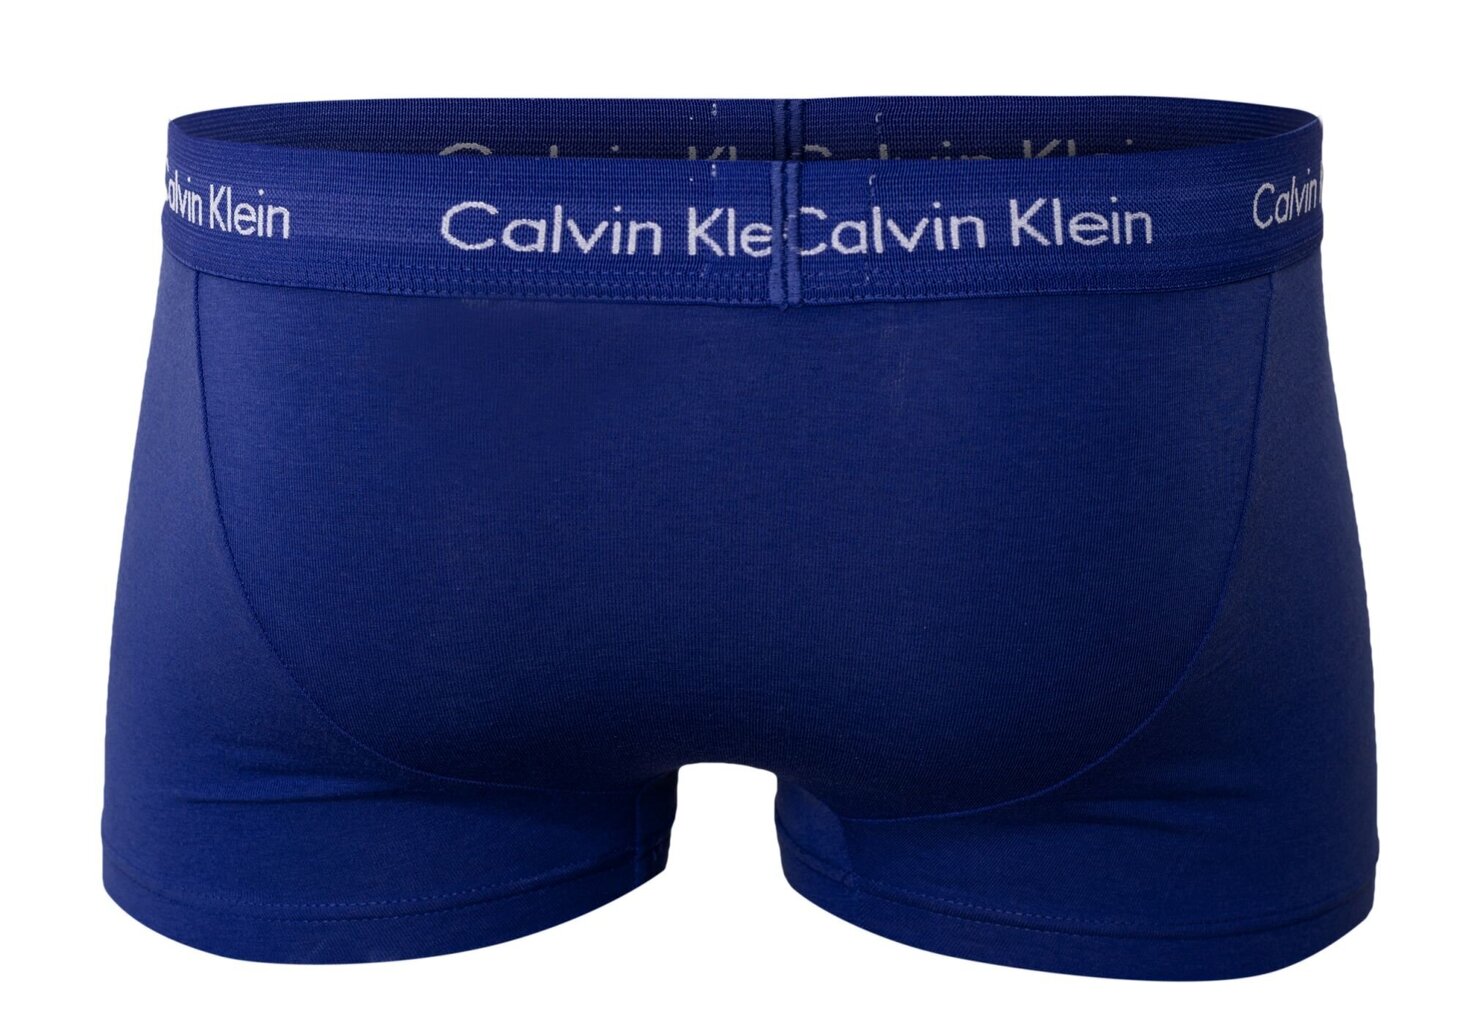 Bokseršorti vīriešiem Calvin Klein ar zemu jostasvietu, 3 gab. U2664G 4KU 12745 cena un informācija | Vīriešu apakšbikses | 220.lv